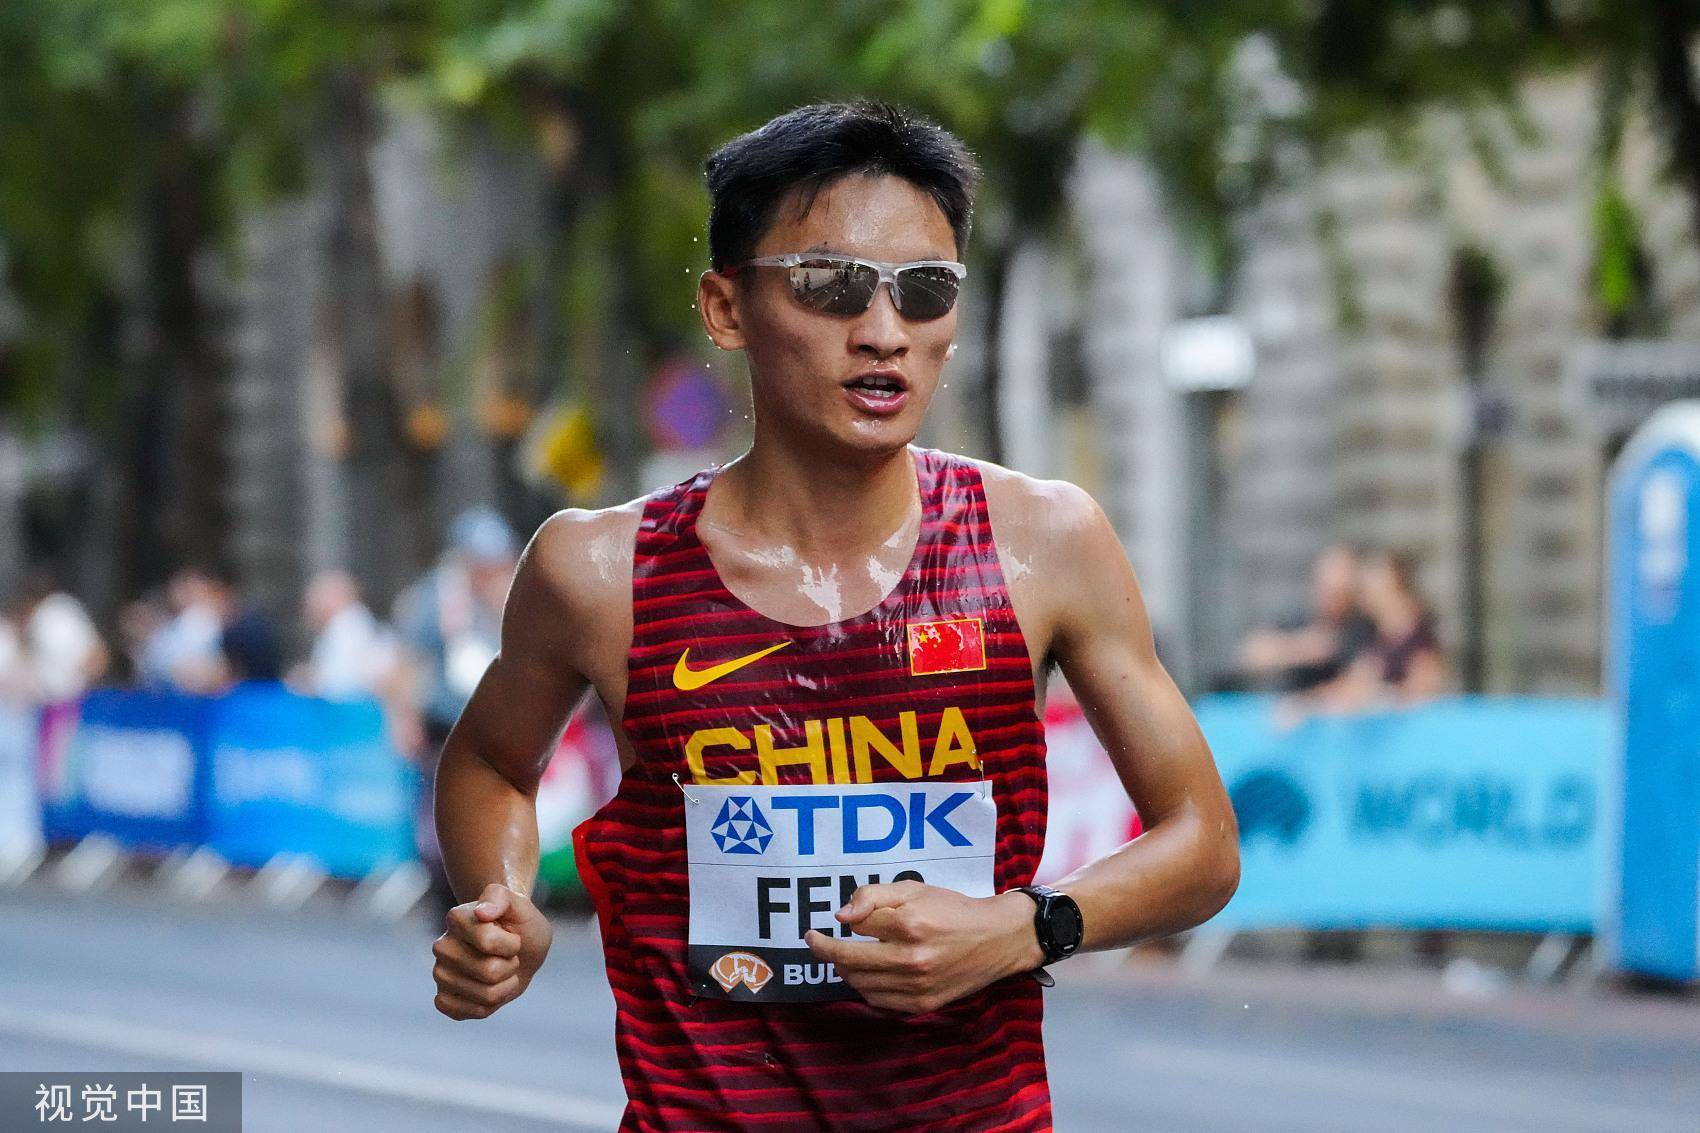 【田径世锦赛】三名中国选手男子马拉松顺利完赛,中国田径队以两铜